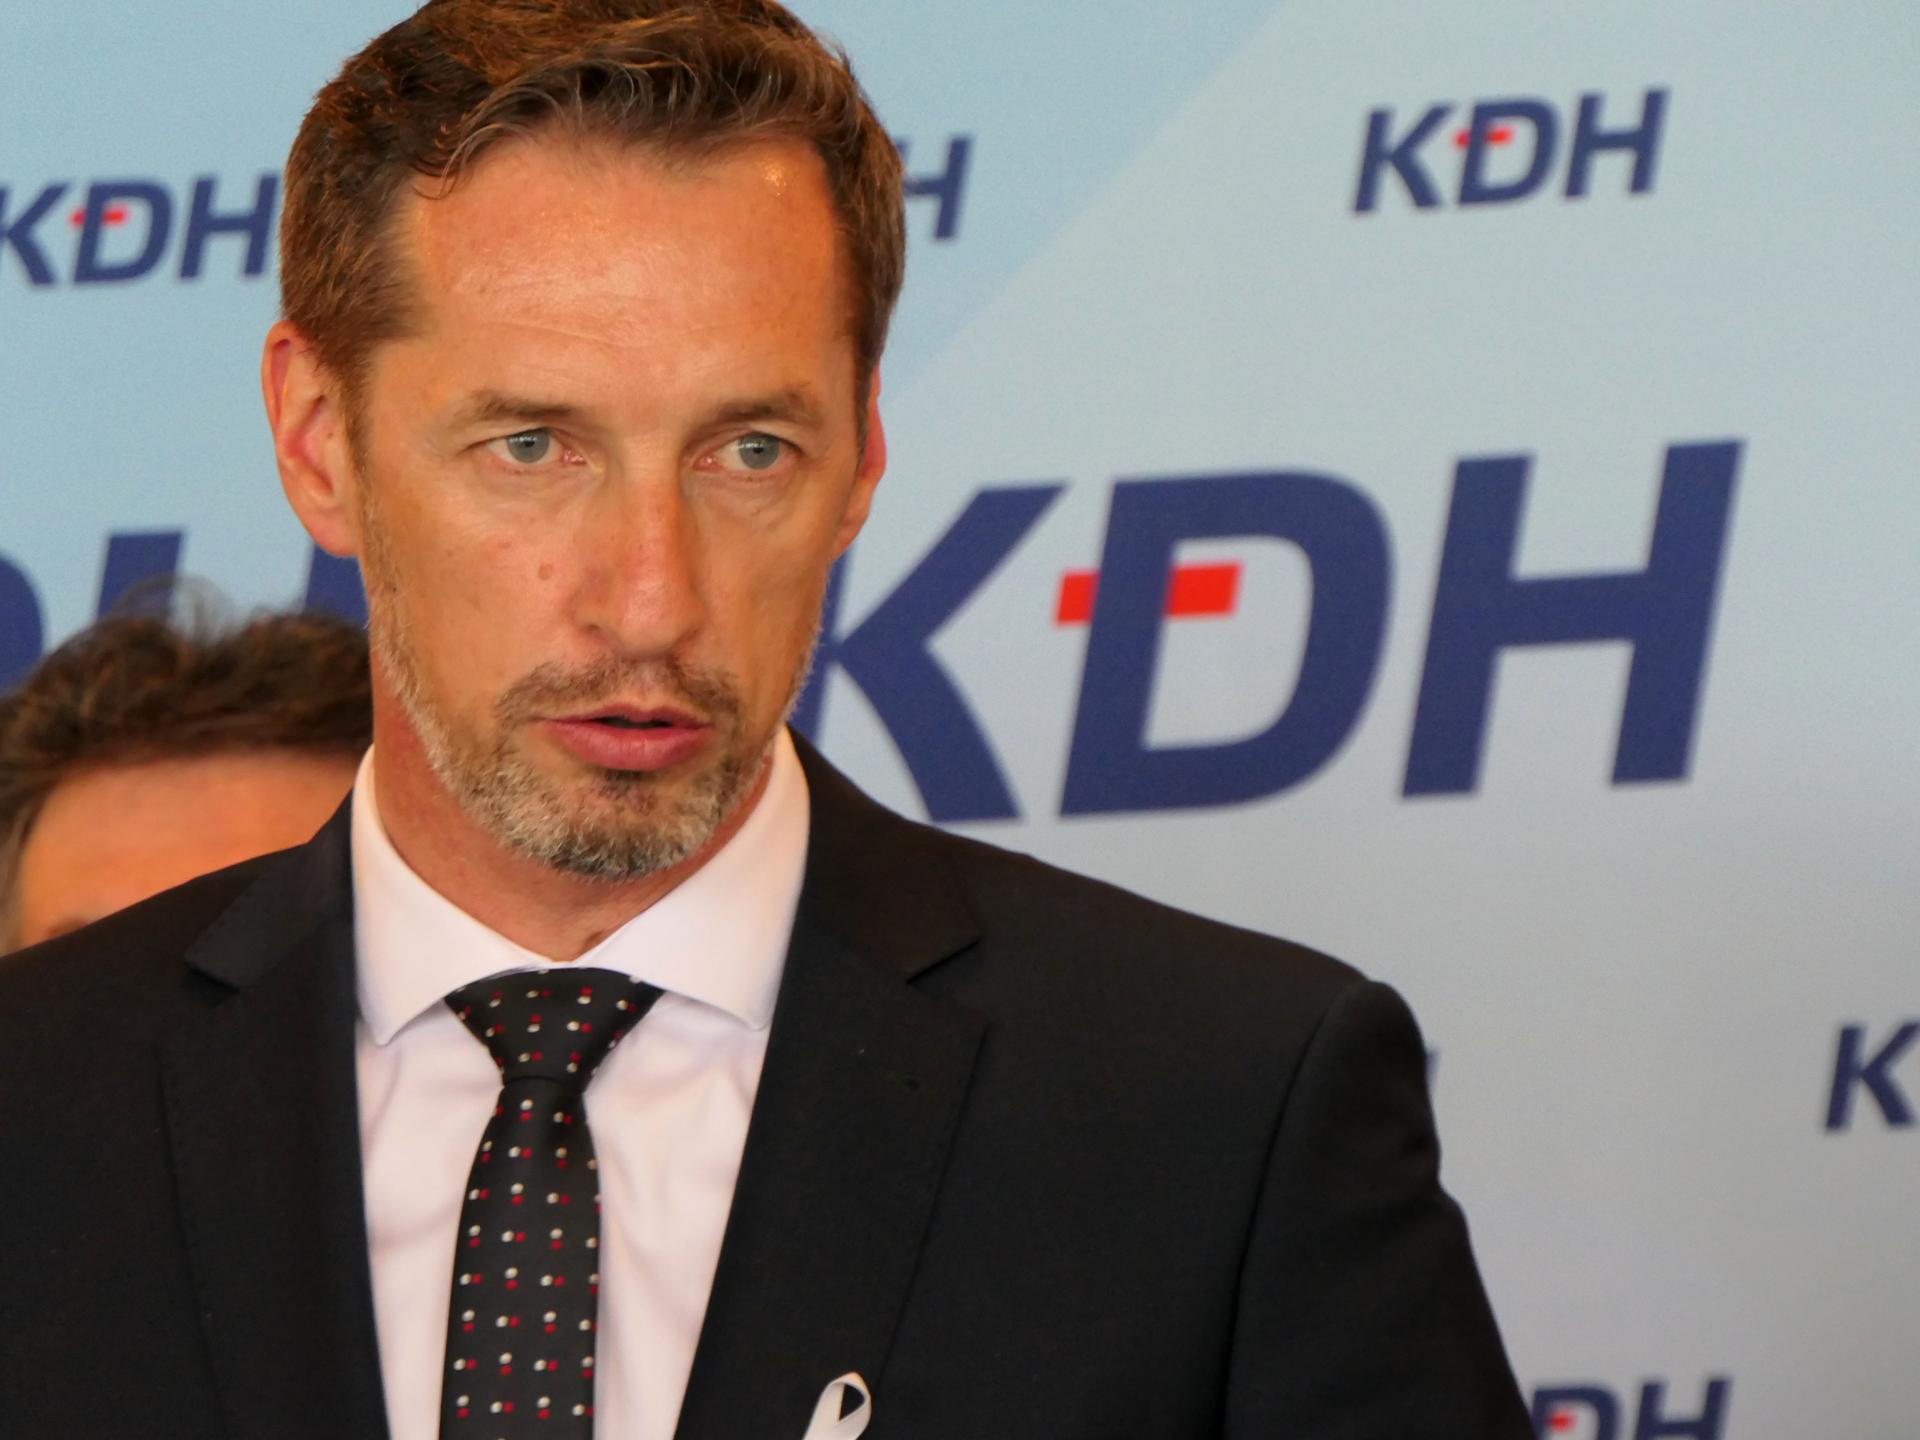 Správa Bruselu o právnom štáte nie je povzbudivá pre Slovensko, reaguje KDH